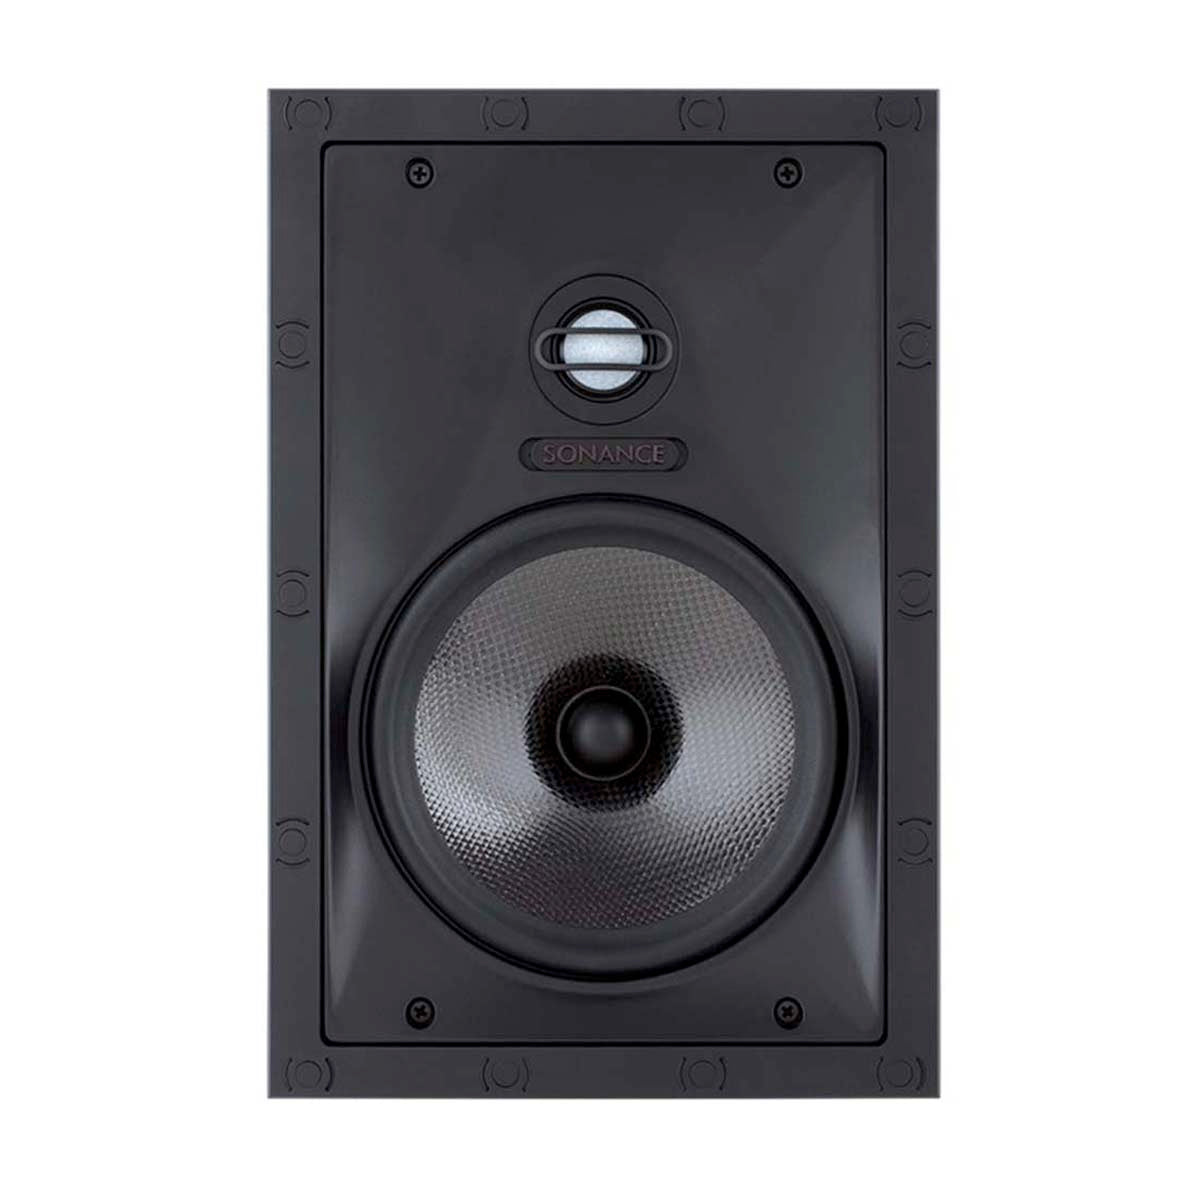 Sonance VP68 6.5" Rectangular Speakers